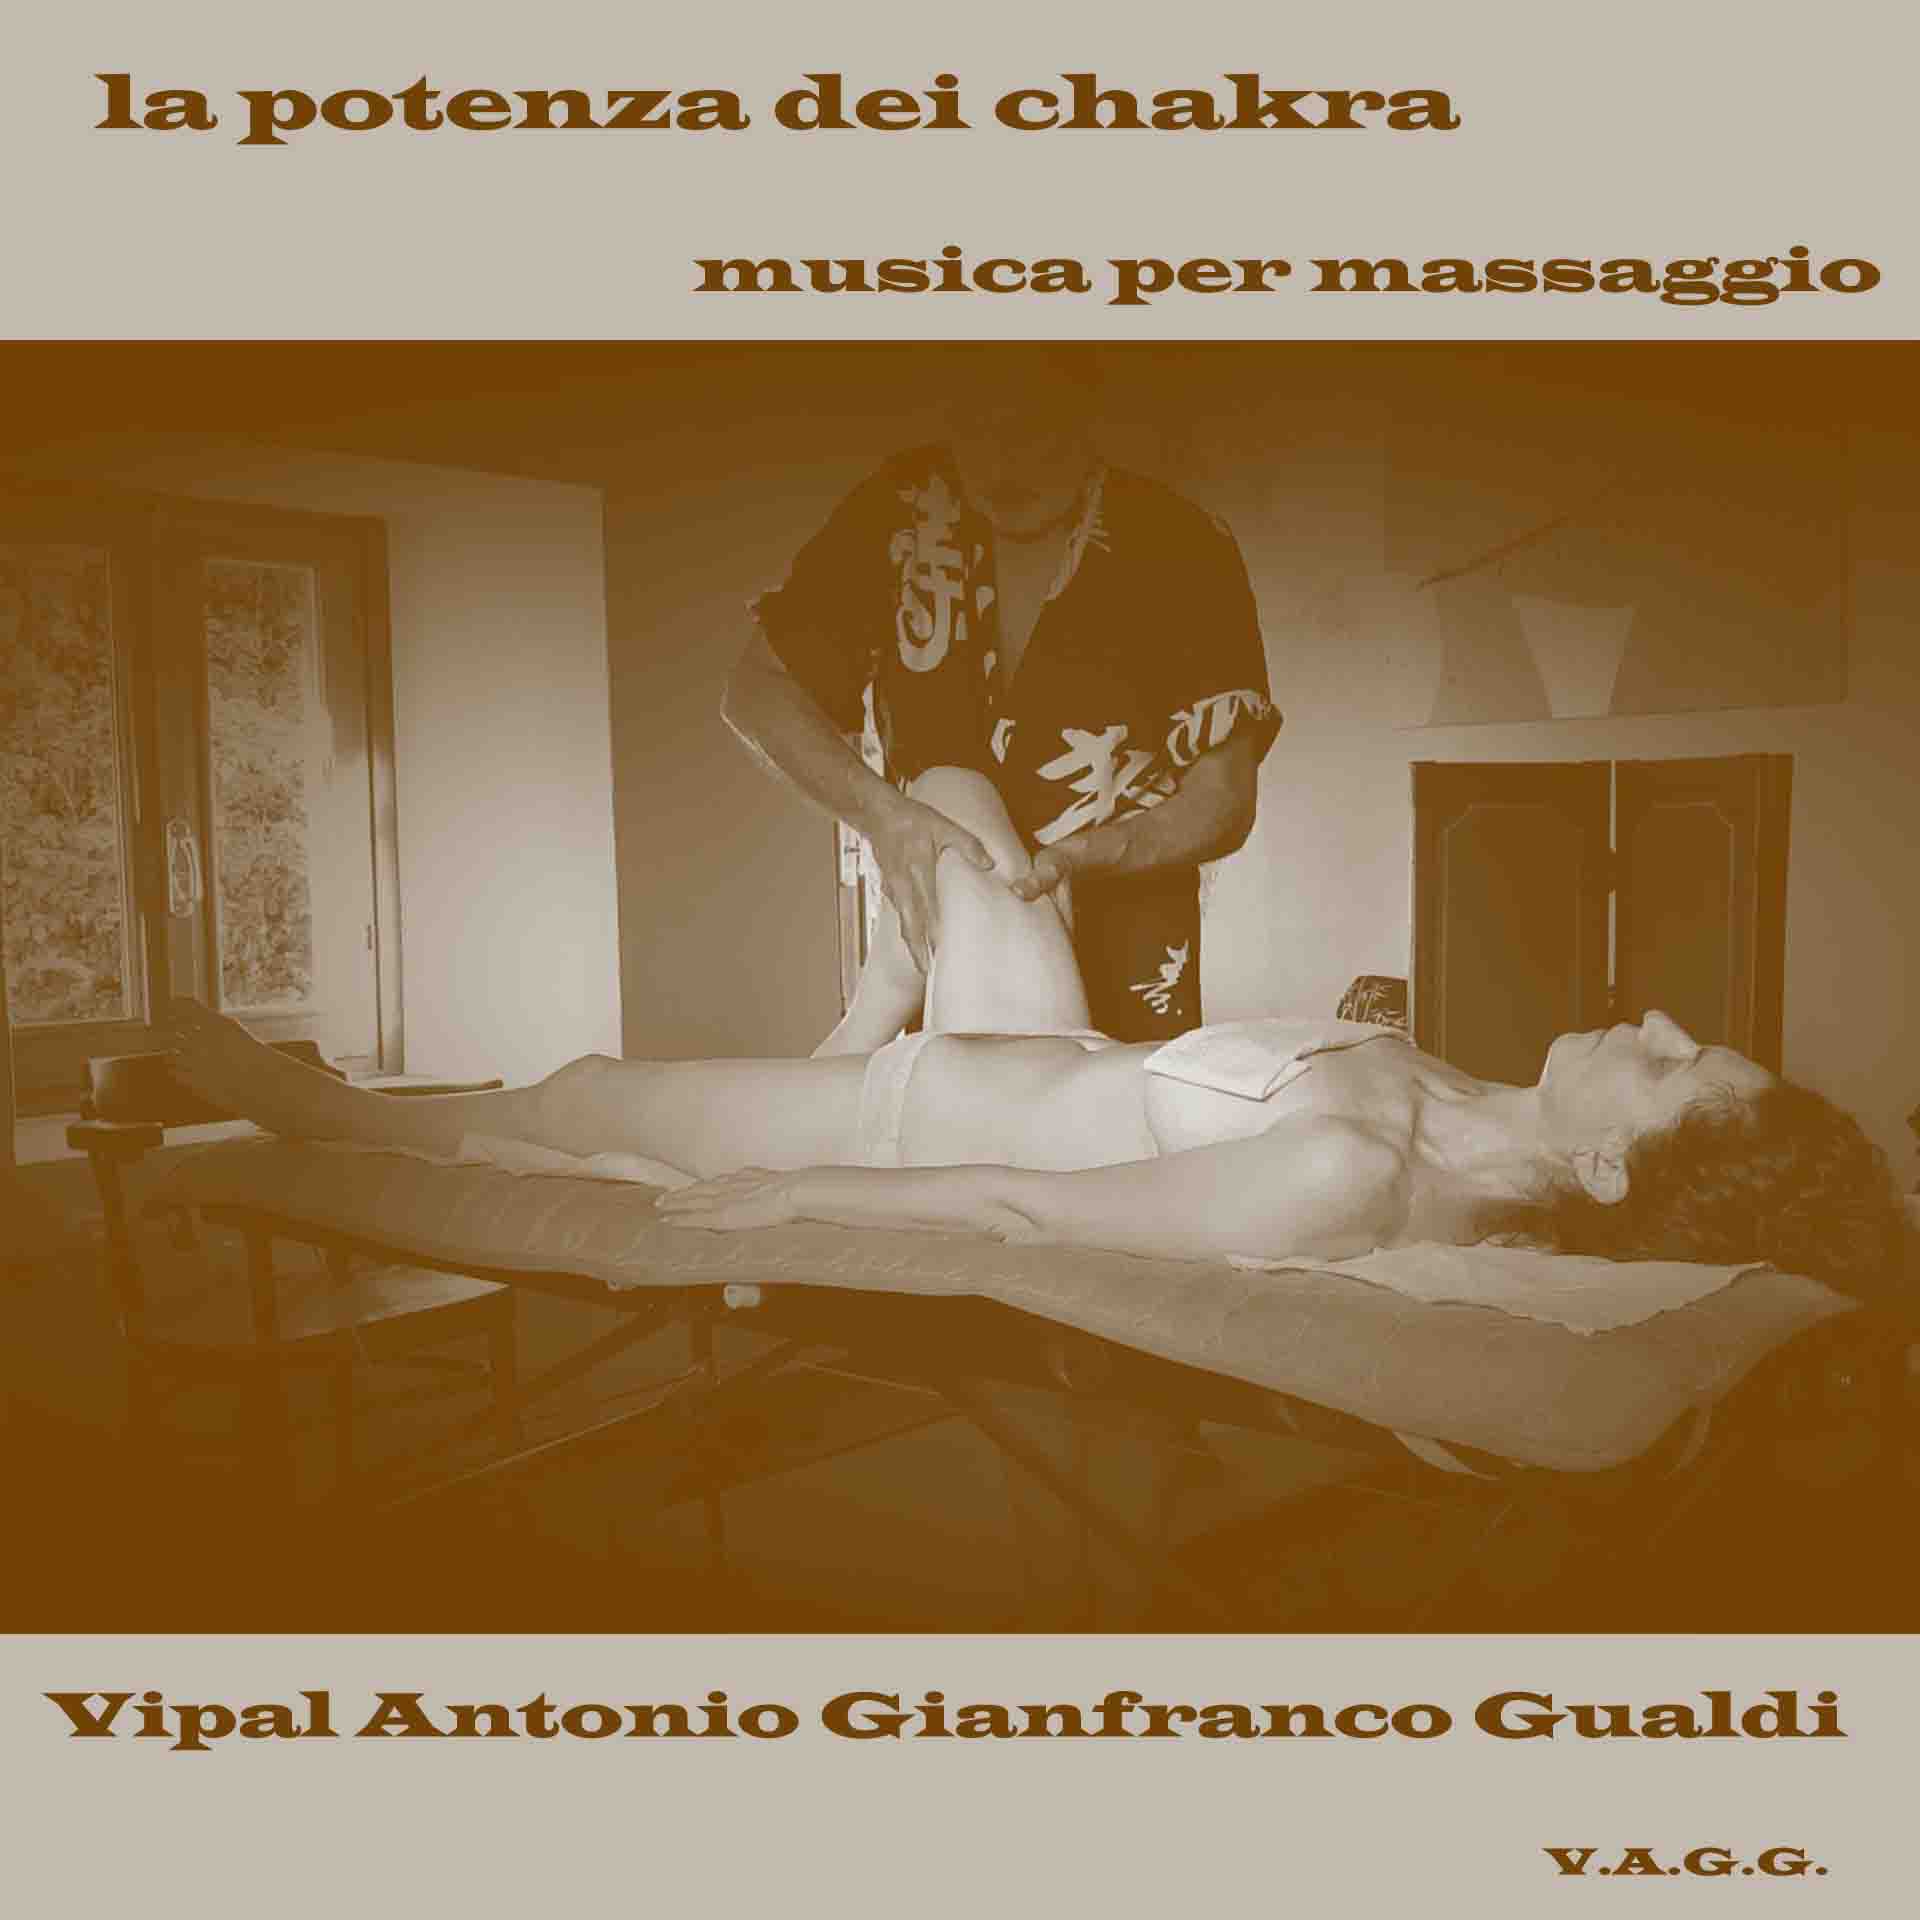 Musica per massaggio la potenza dei chakra V.A.G.G. Vipal Antonio Gianfranco Gualdi